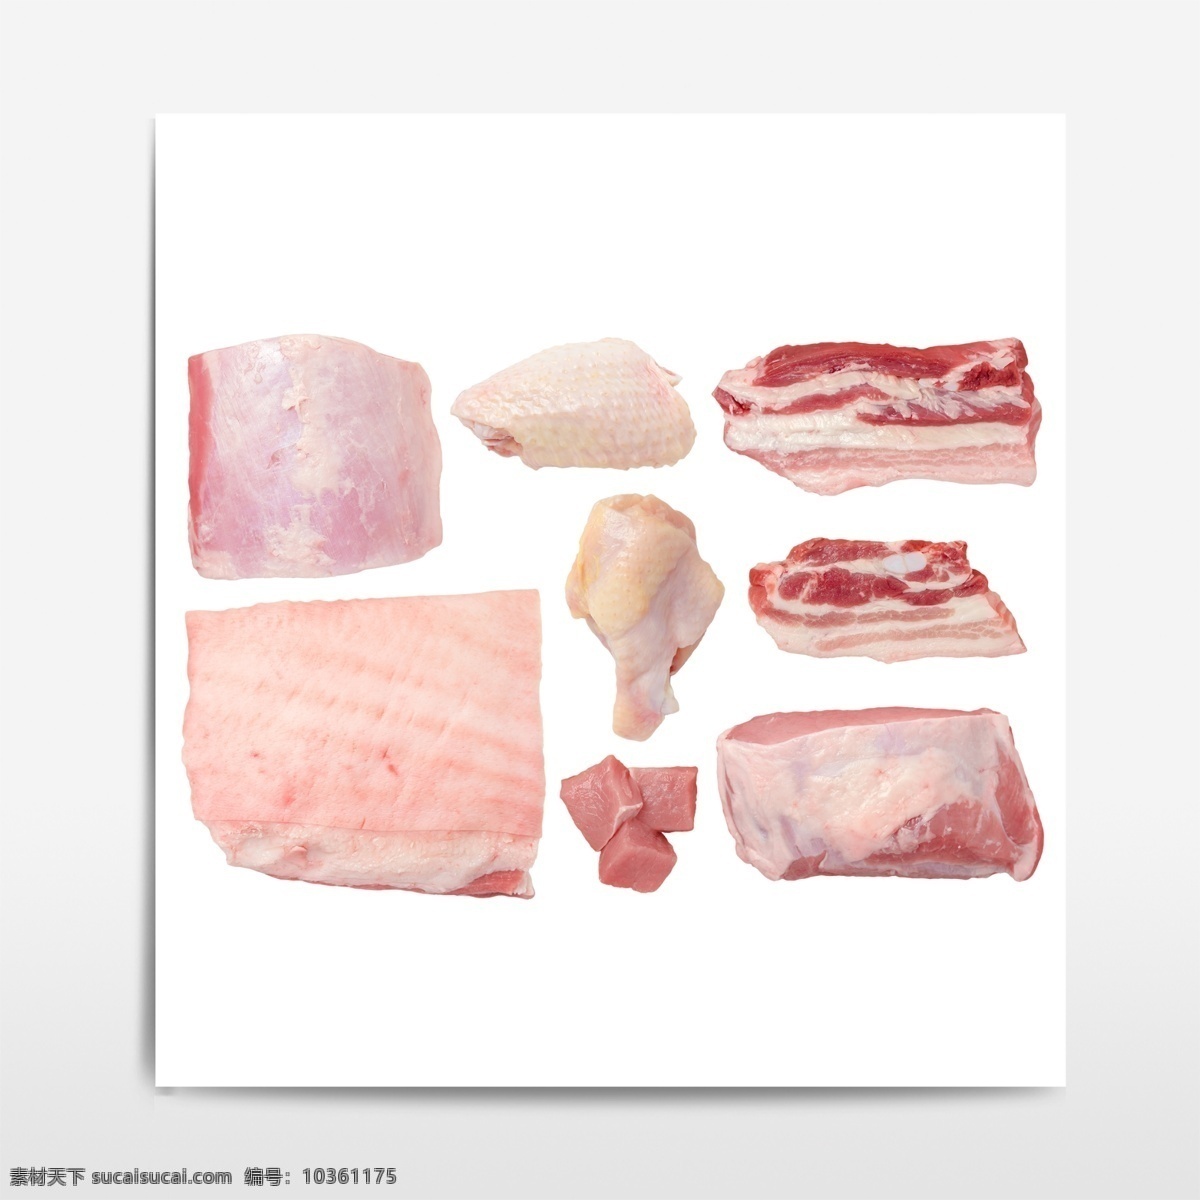 鸡肉 猪肉 食品元素 肉食 肉类 免抠元素 分层